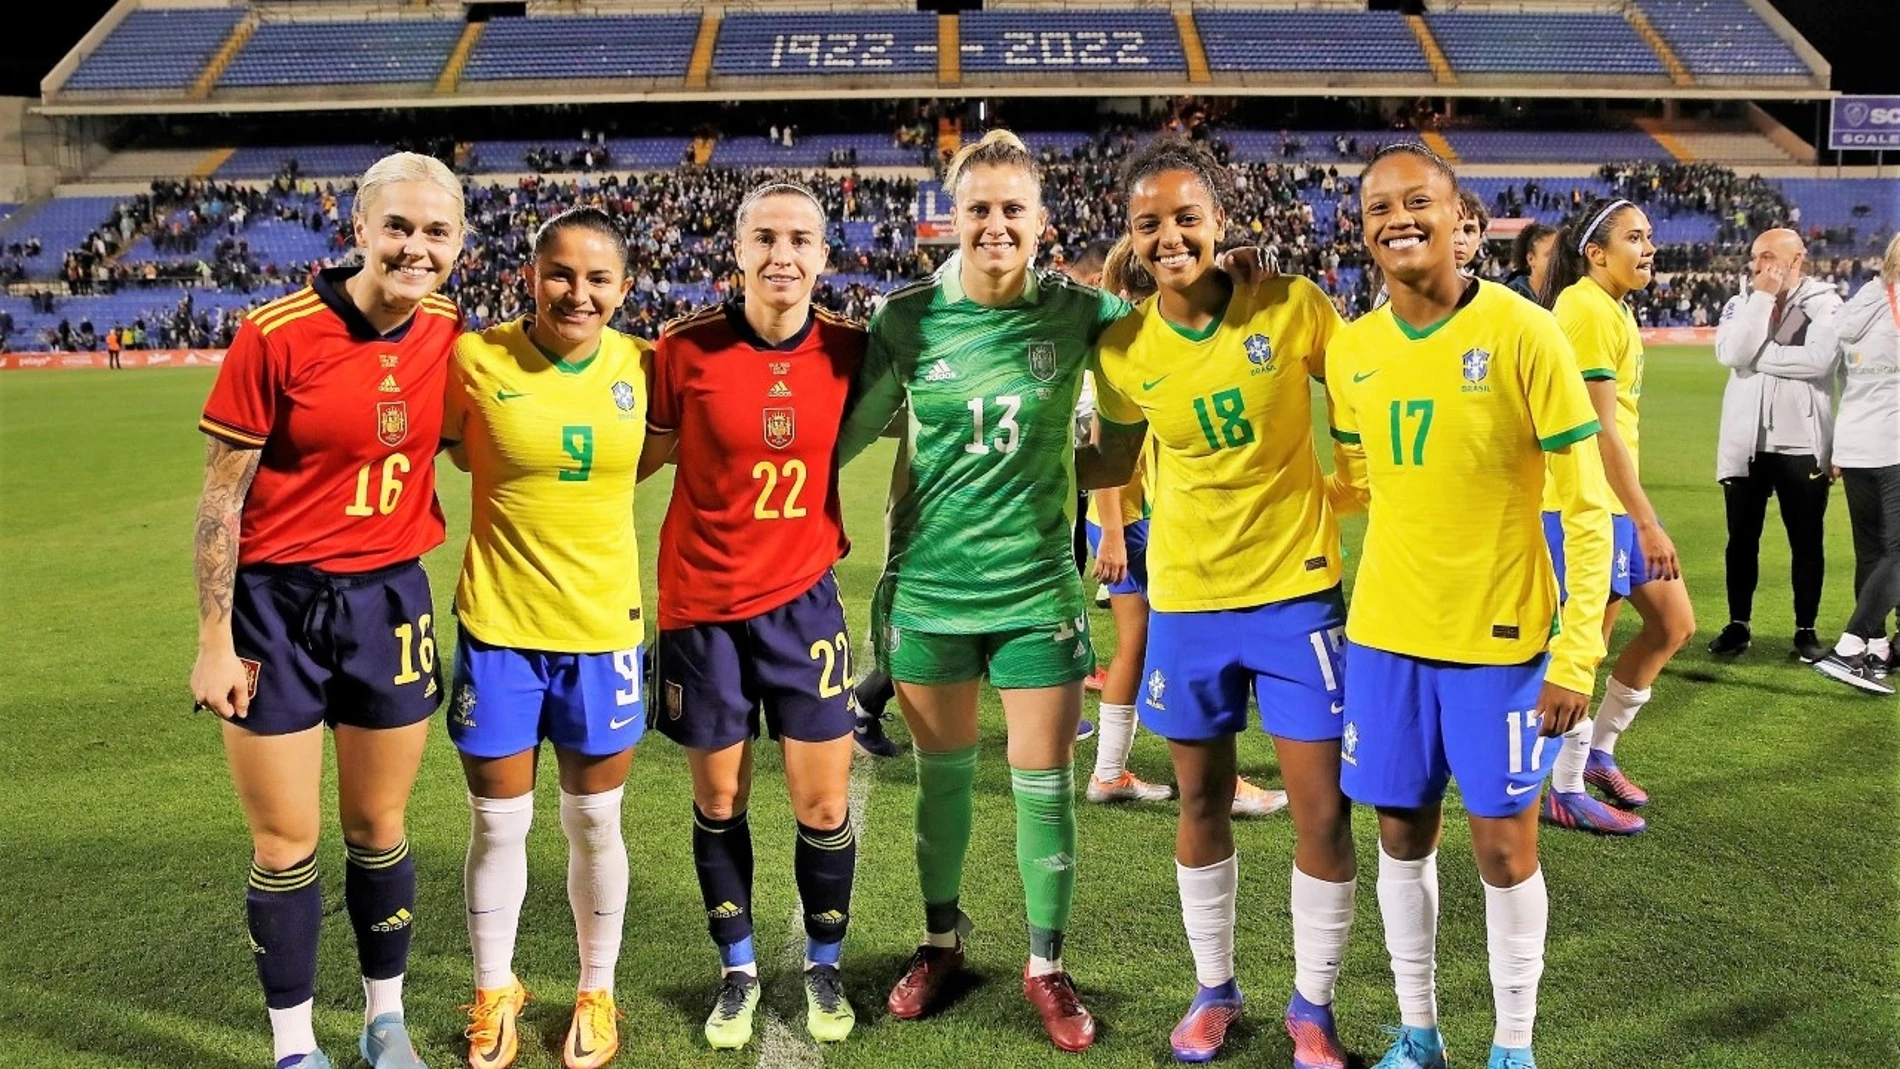 Jugadoras de la selección de Brasil junto a internacionales españolas